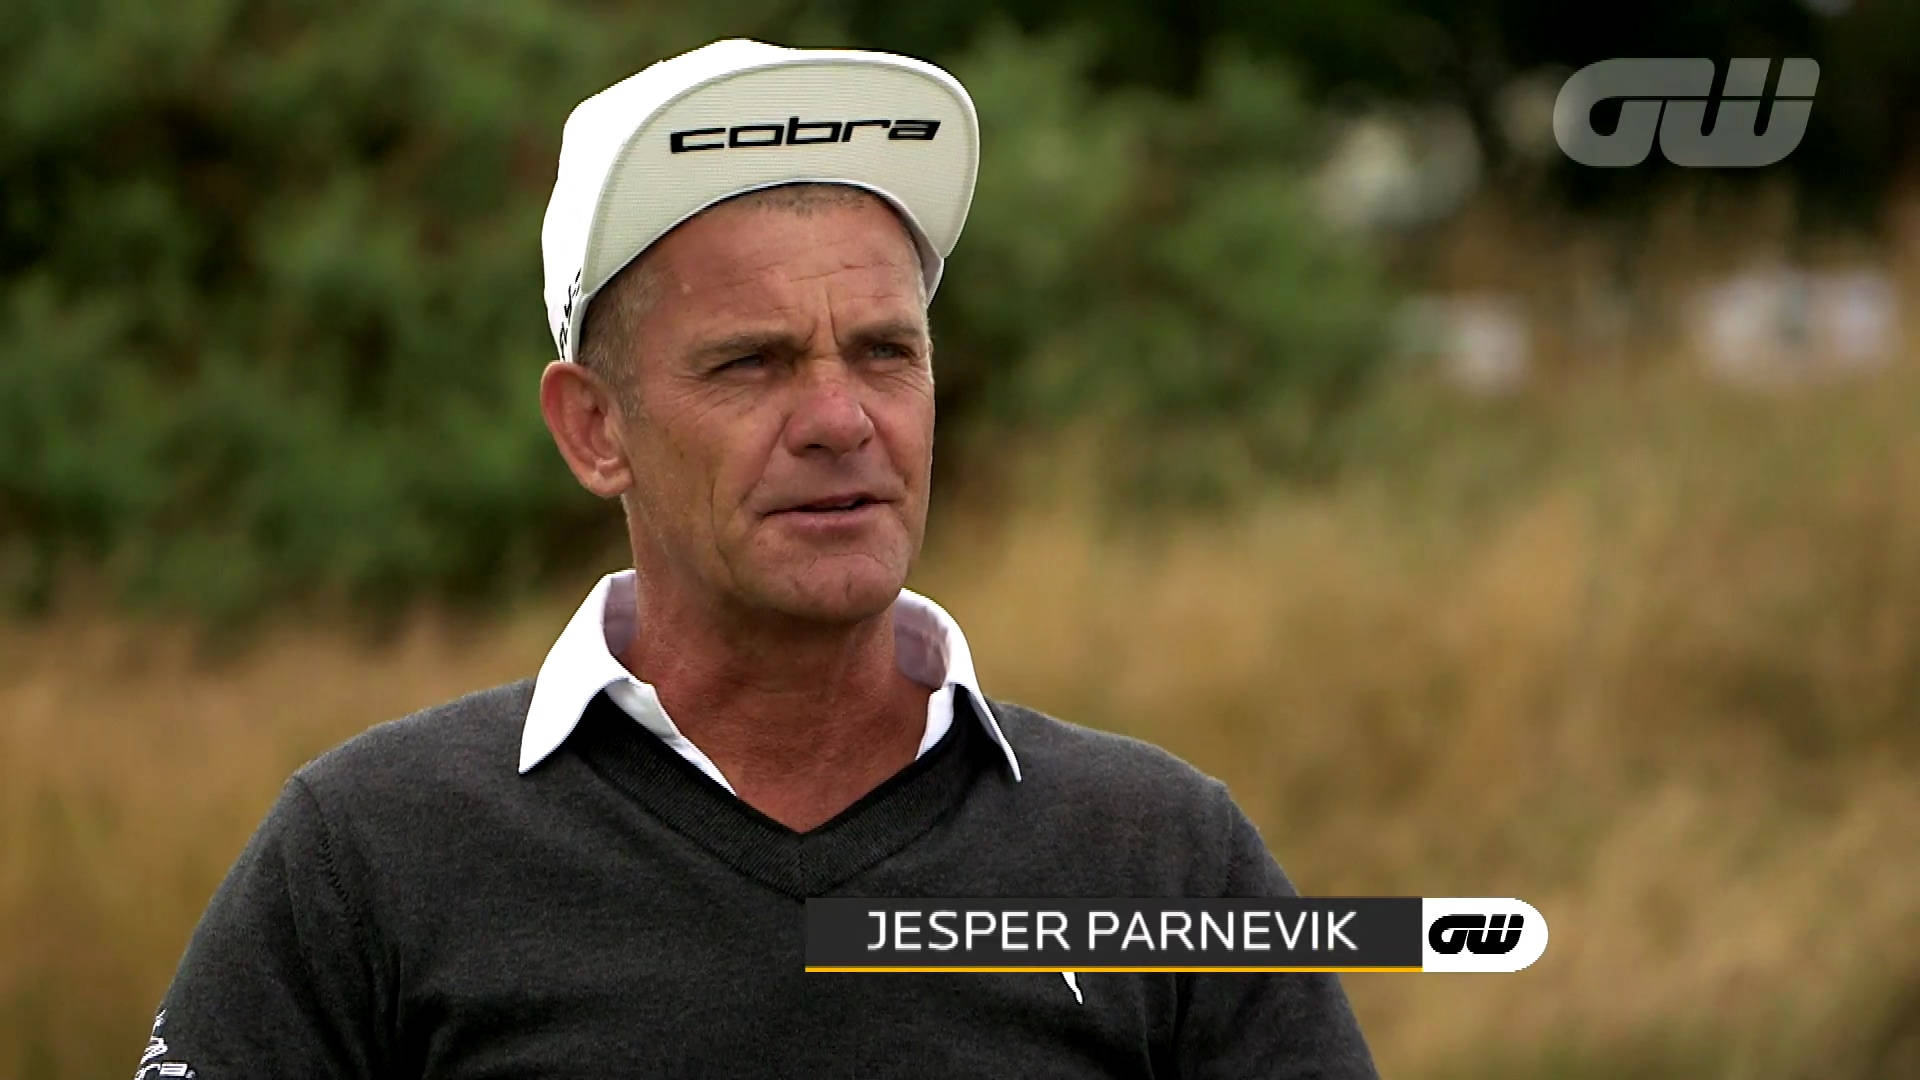 Jesper Parnevik i Golfing World Video Tapet Wallpaper